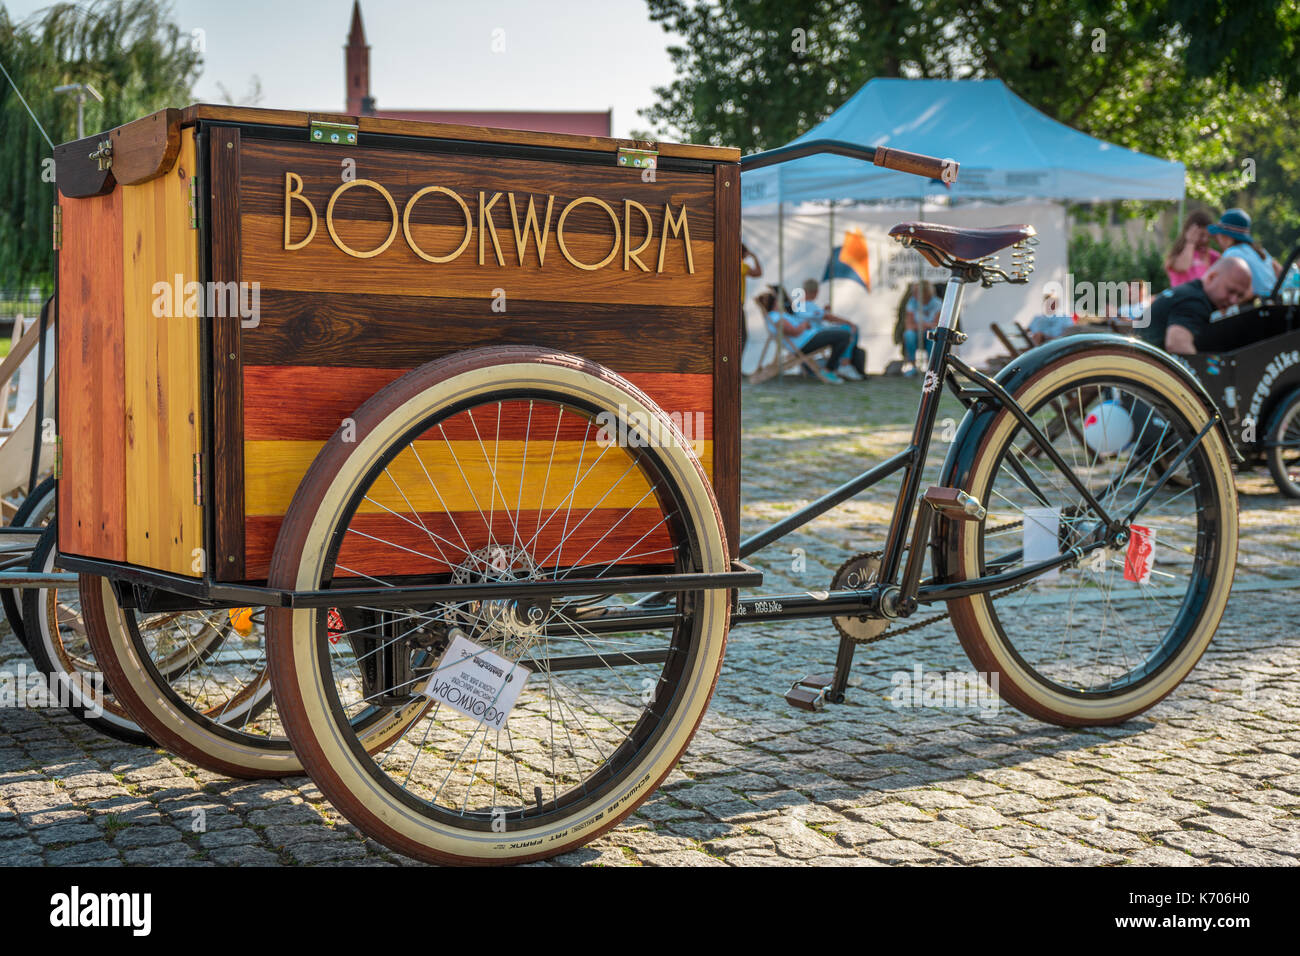 Vintage Dreirad/Fahrrad mit einem hölzernen Buch Fach an der Front, in der Innenstadt von Wroclaw, Polen gesehen Stockfoto